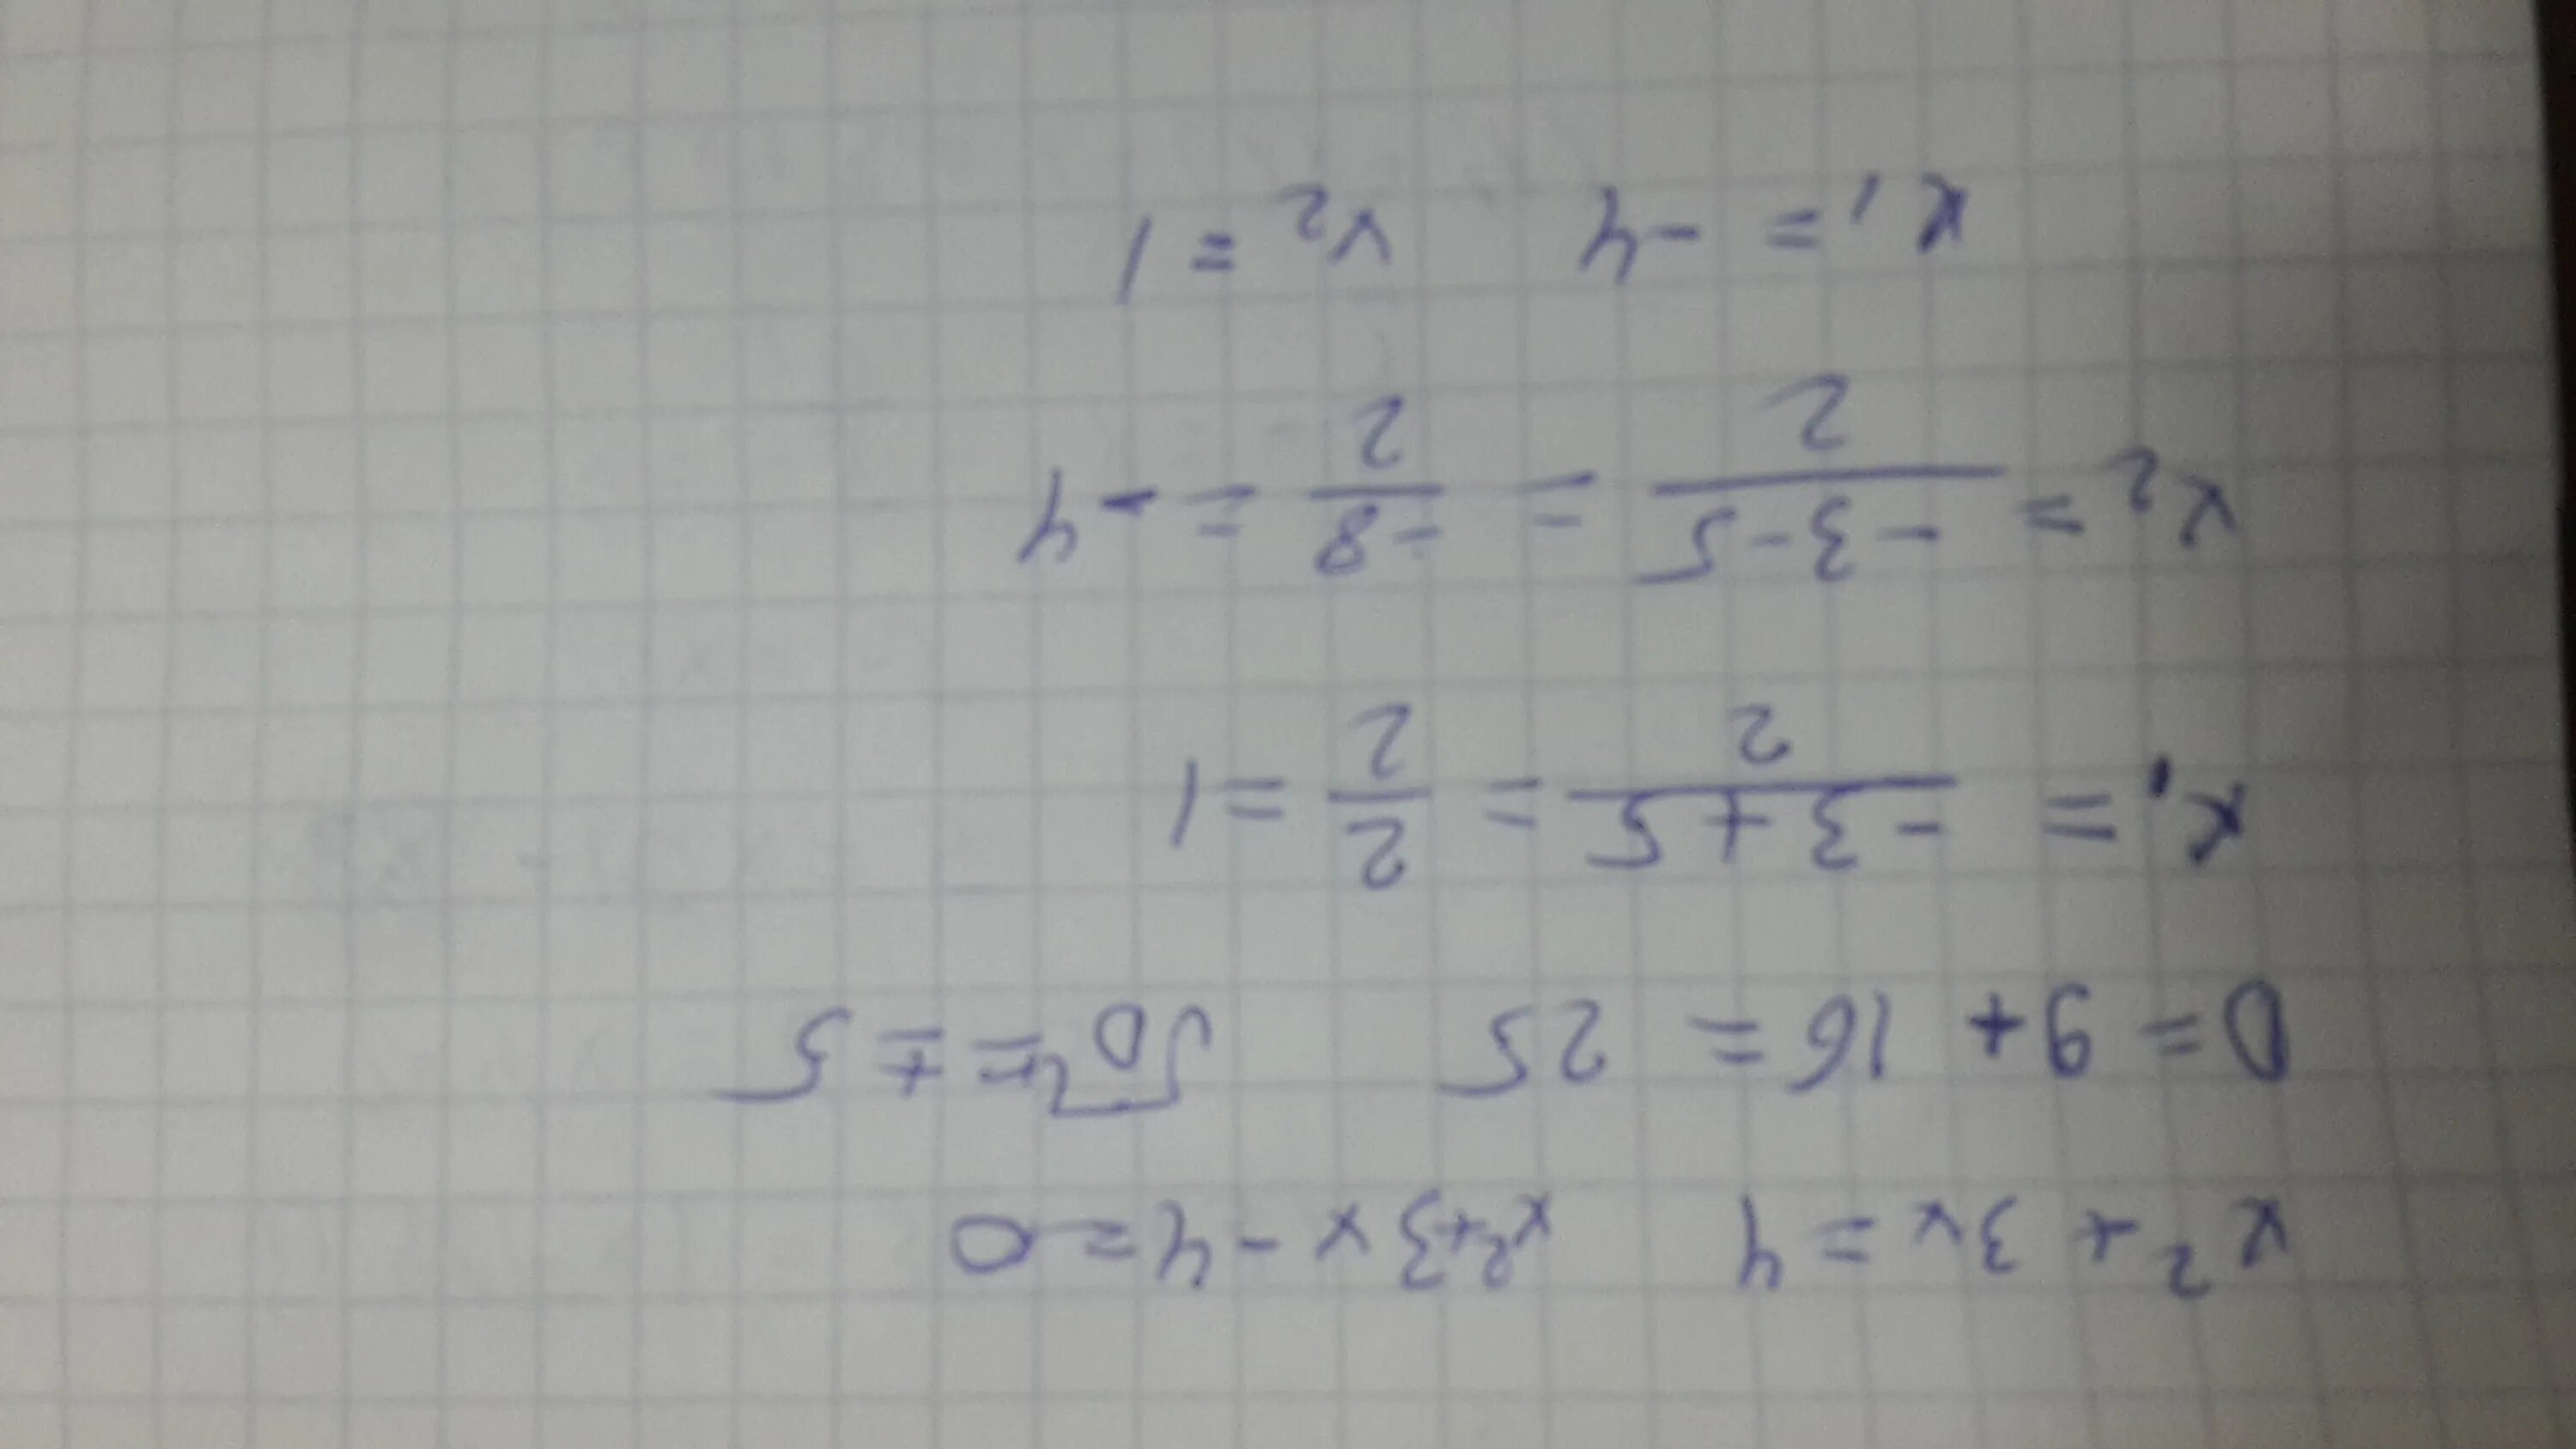 Решение уравнения (8x+x)*4=592. Решите уравнения и запишите корни в порядке возрастания. Запишите корни в порядке возрастания через точку с запятой.